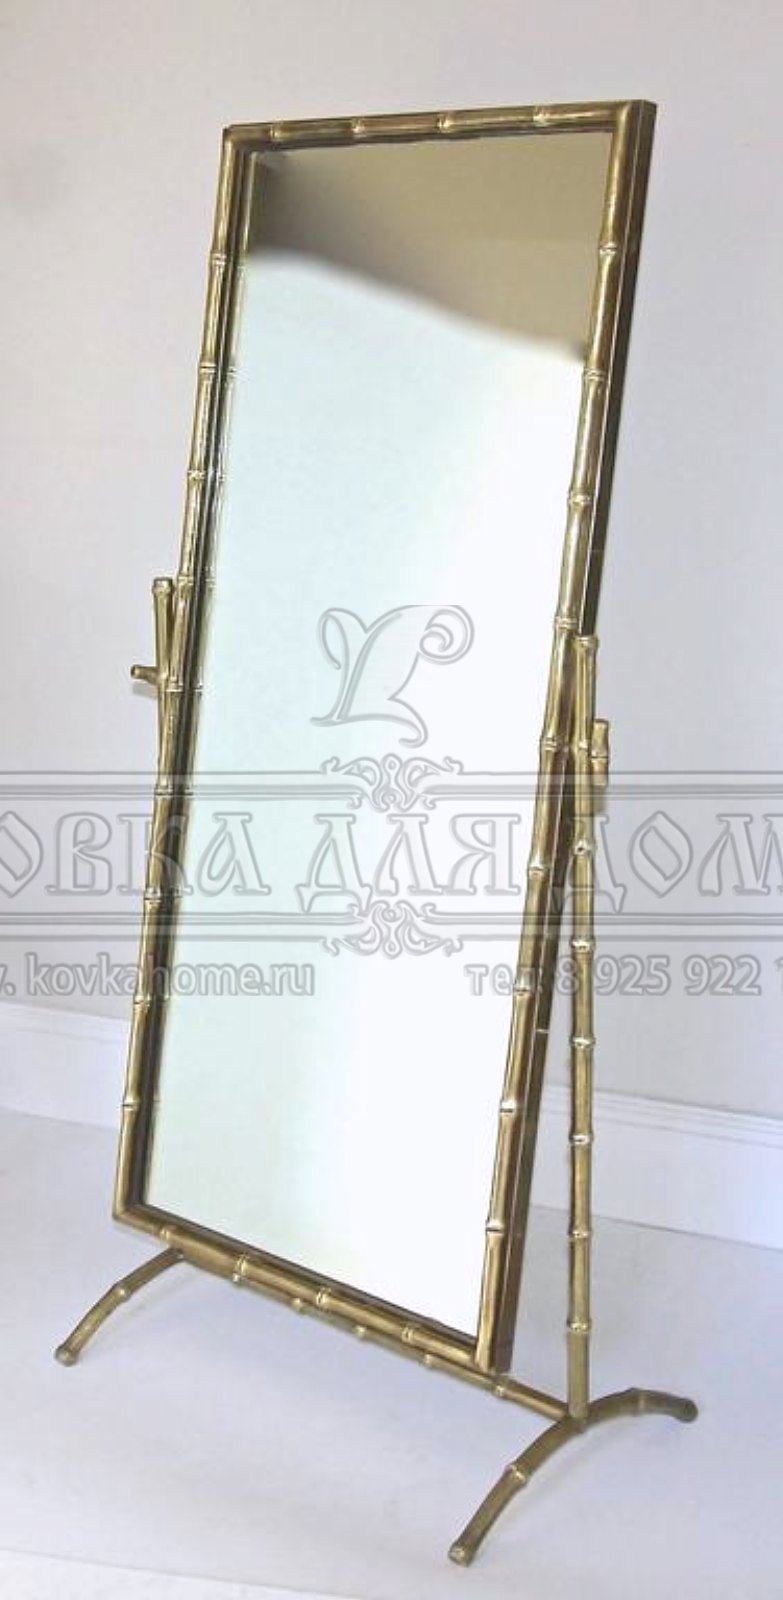 Зеркало напольное примерочное в стиле артдеко в декоративной стальной оригинальной раме, с кованым декором. Размер габаритный 1700х1000мм.